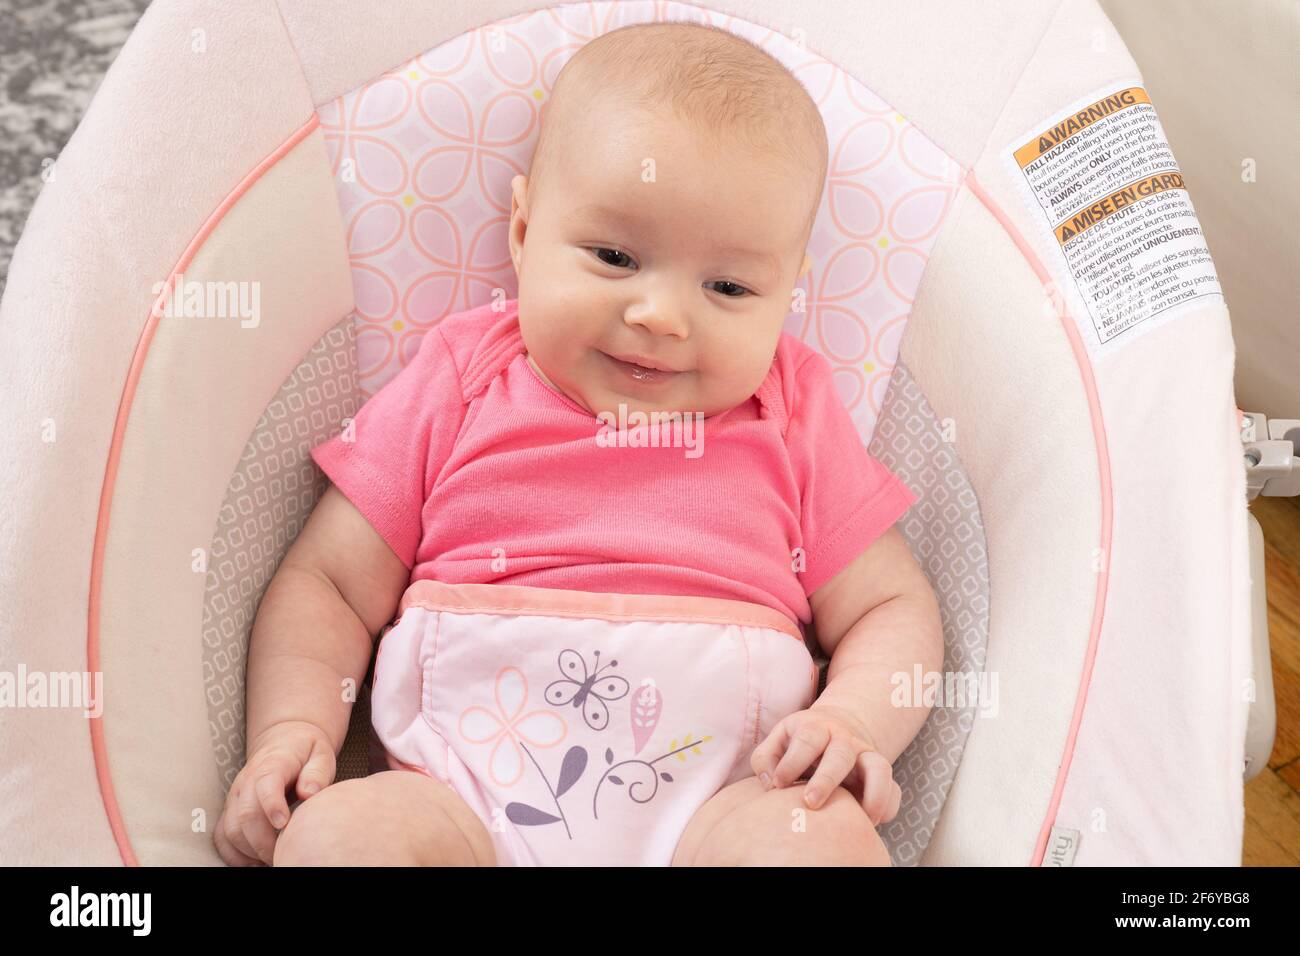 Nahaufnahme eines zwei Monate alten Mädchens, auf dem Kindersitz, lächelnd Stockfoto